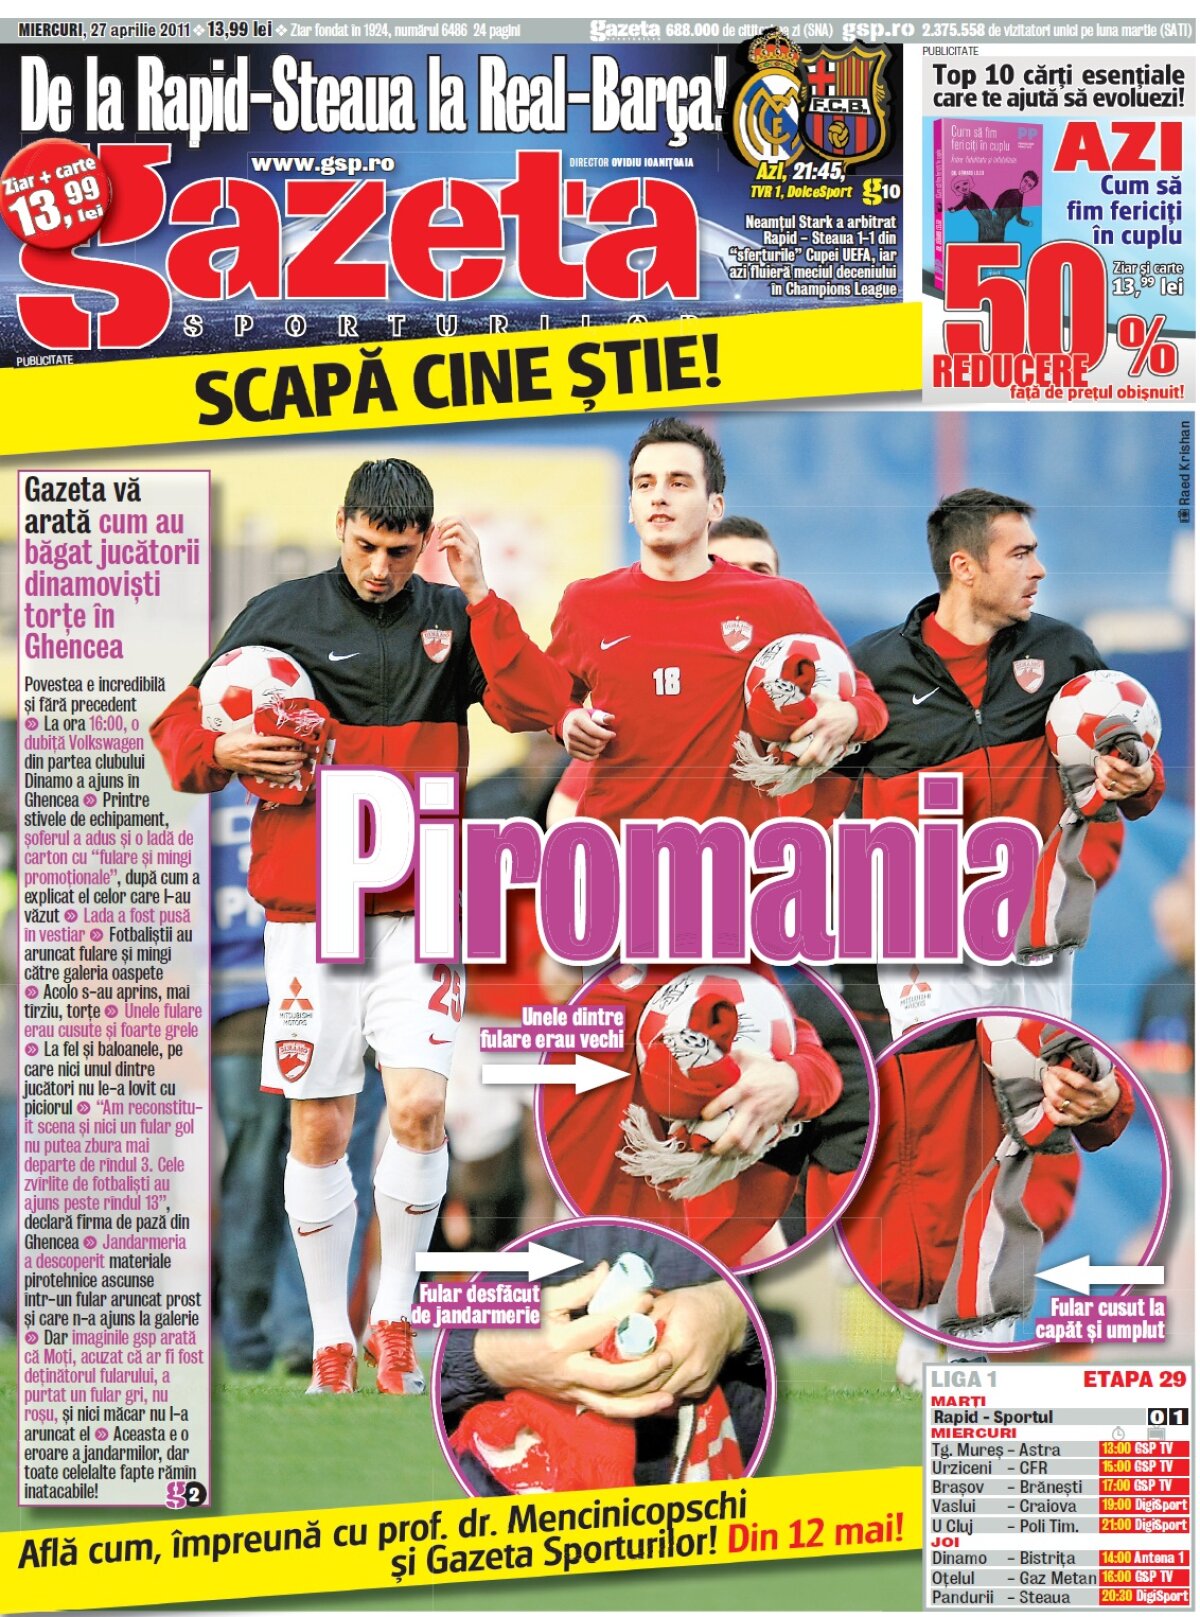 FOTO » Gazeta a reconstituit "drumul" torţelor din Ghencea » Ultras Dinamo: "Jucătorii ni le-au dat, sînt nişte eroi!"